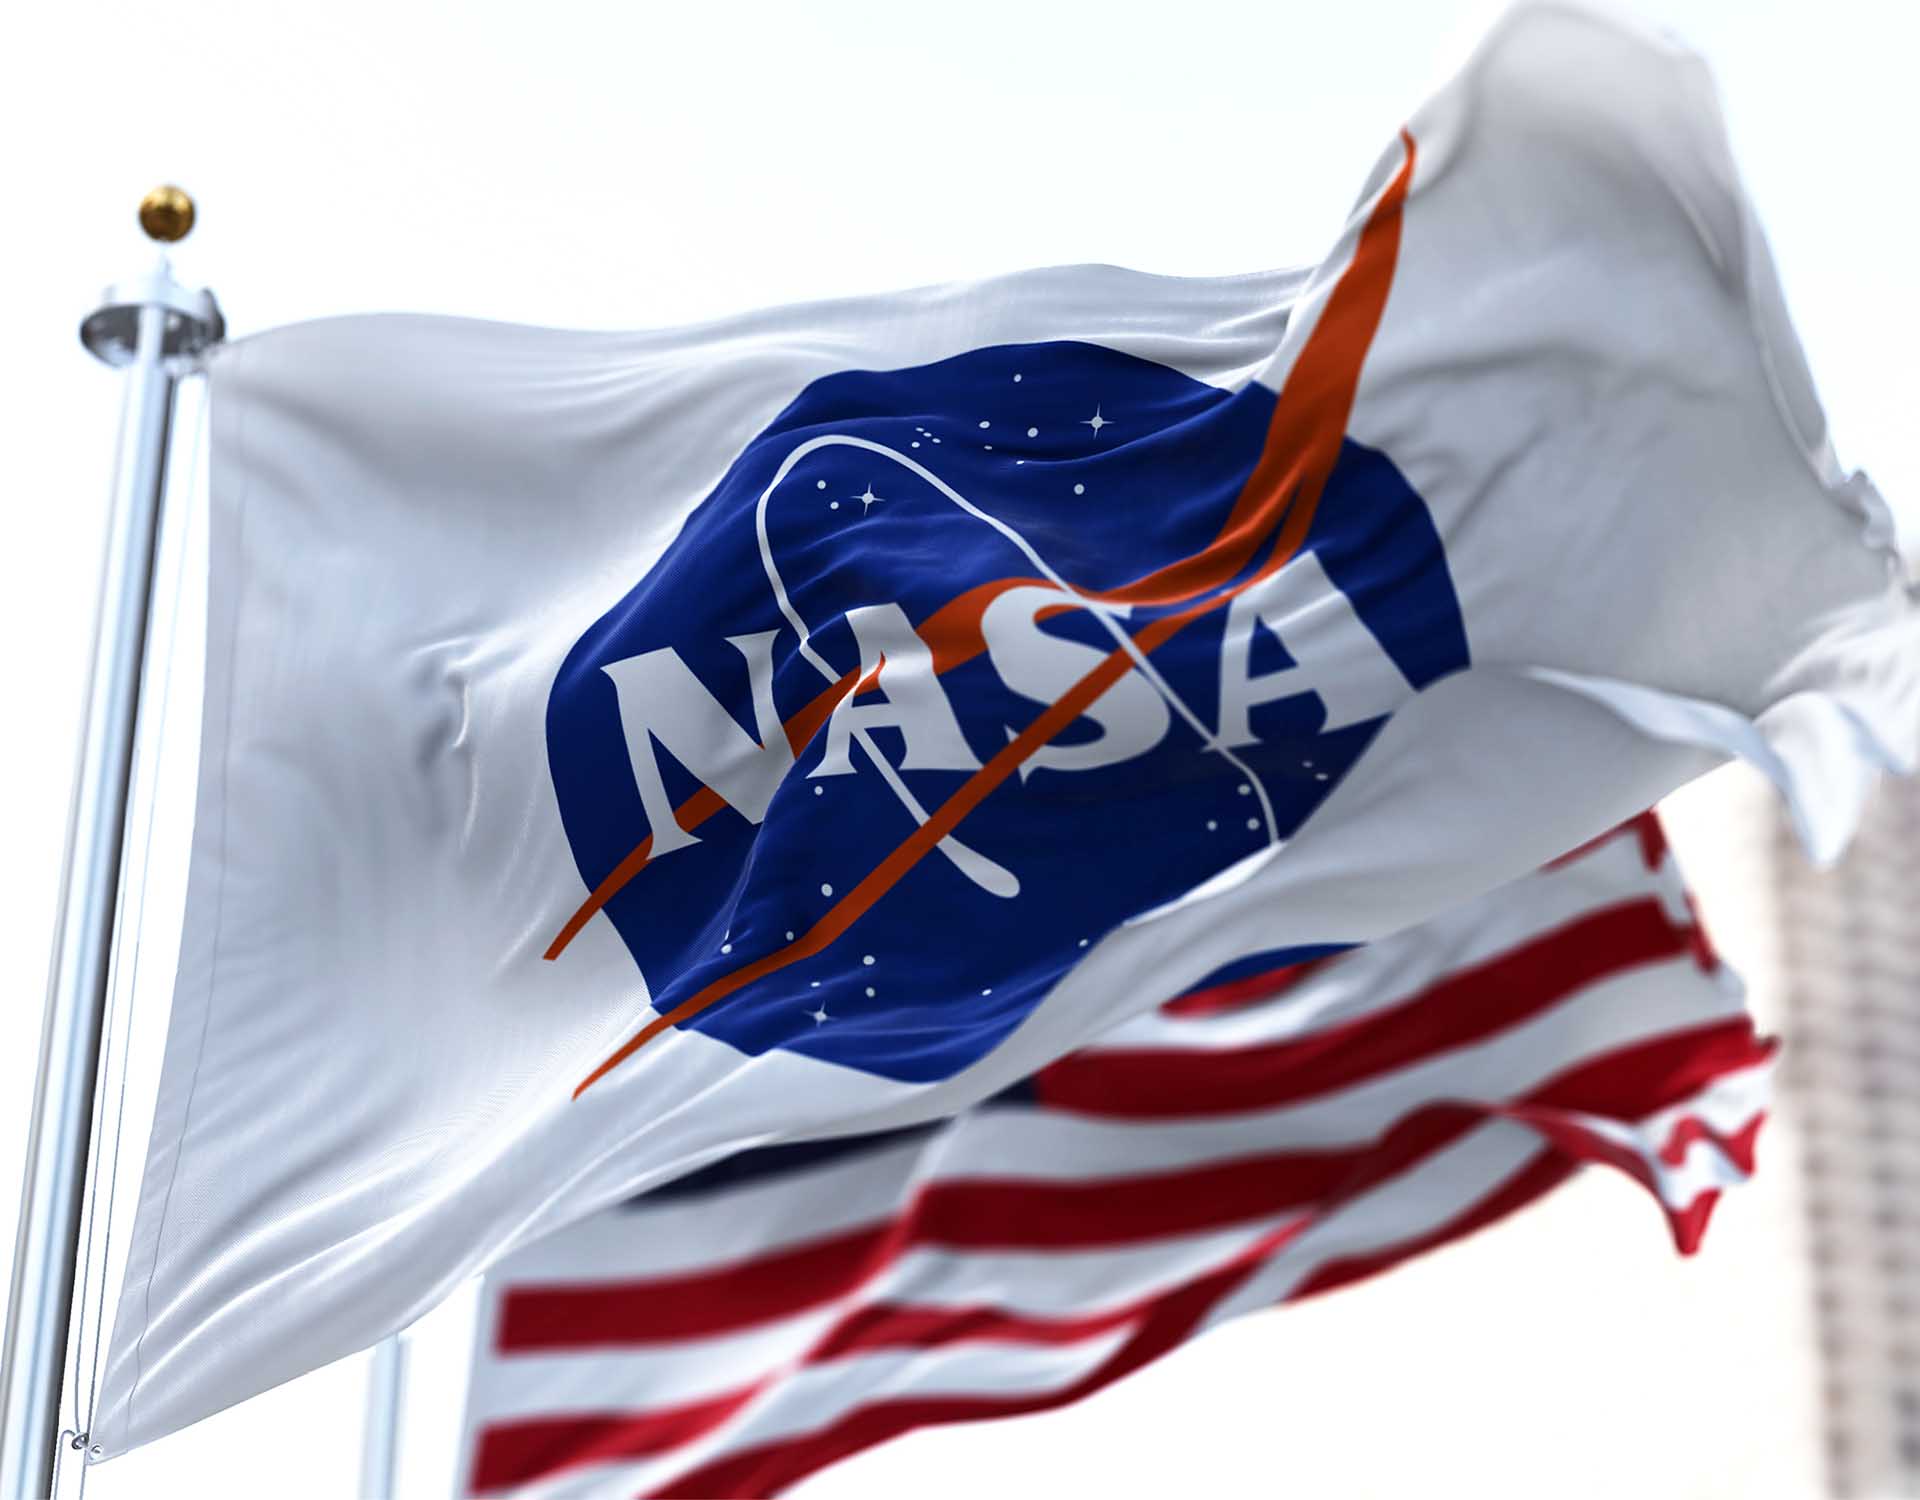 IDEMIA anunció que fue seleccionada por la Administración Nacional de Aeronáutica y del Espacio (NASA) para otorgar una solución